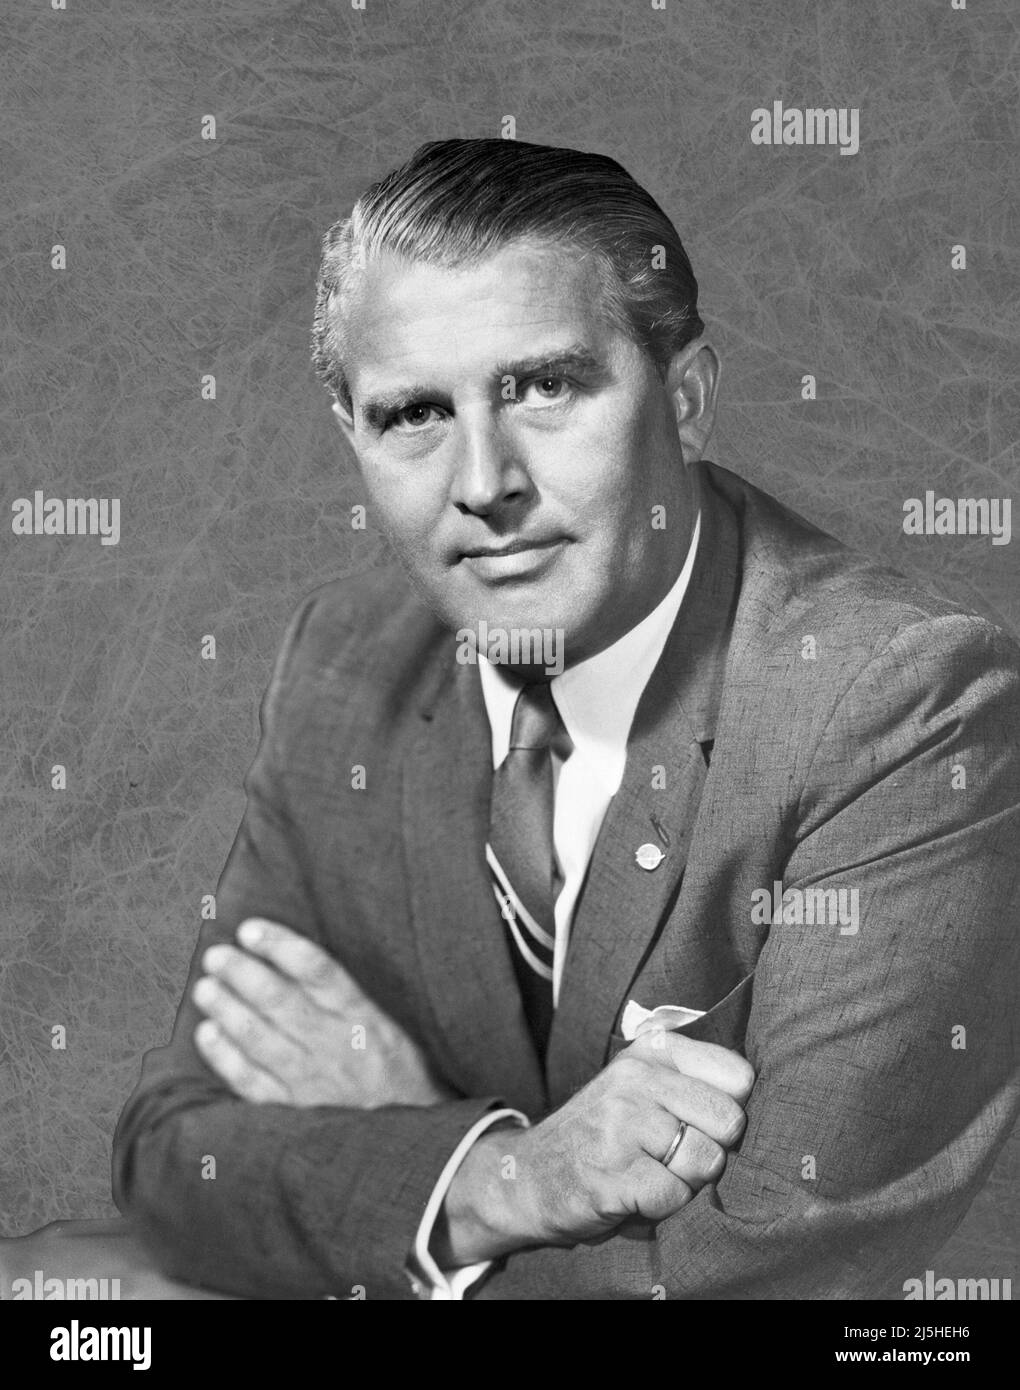 Un portrait de 1960 du Dr Wernher von Braun. Après la Seconde Guerre mondiale, M. von Braun et ses collègues allemands sont arrivés aux États-Unis dans le cadre du projet trombone pour poursuivre leur travail de développement de fusées. Banque D'Images